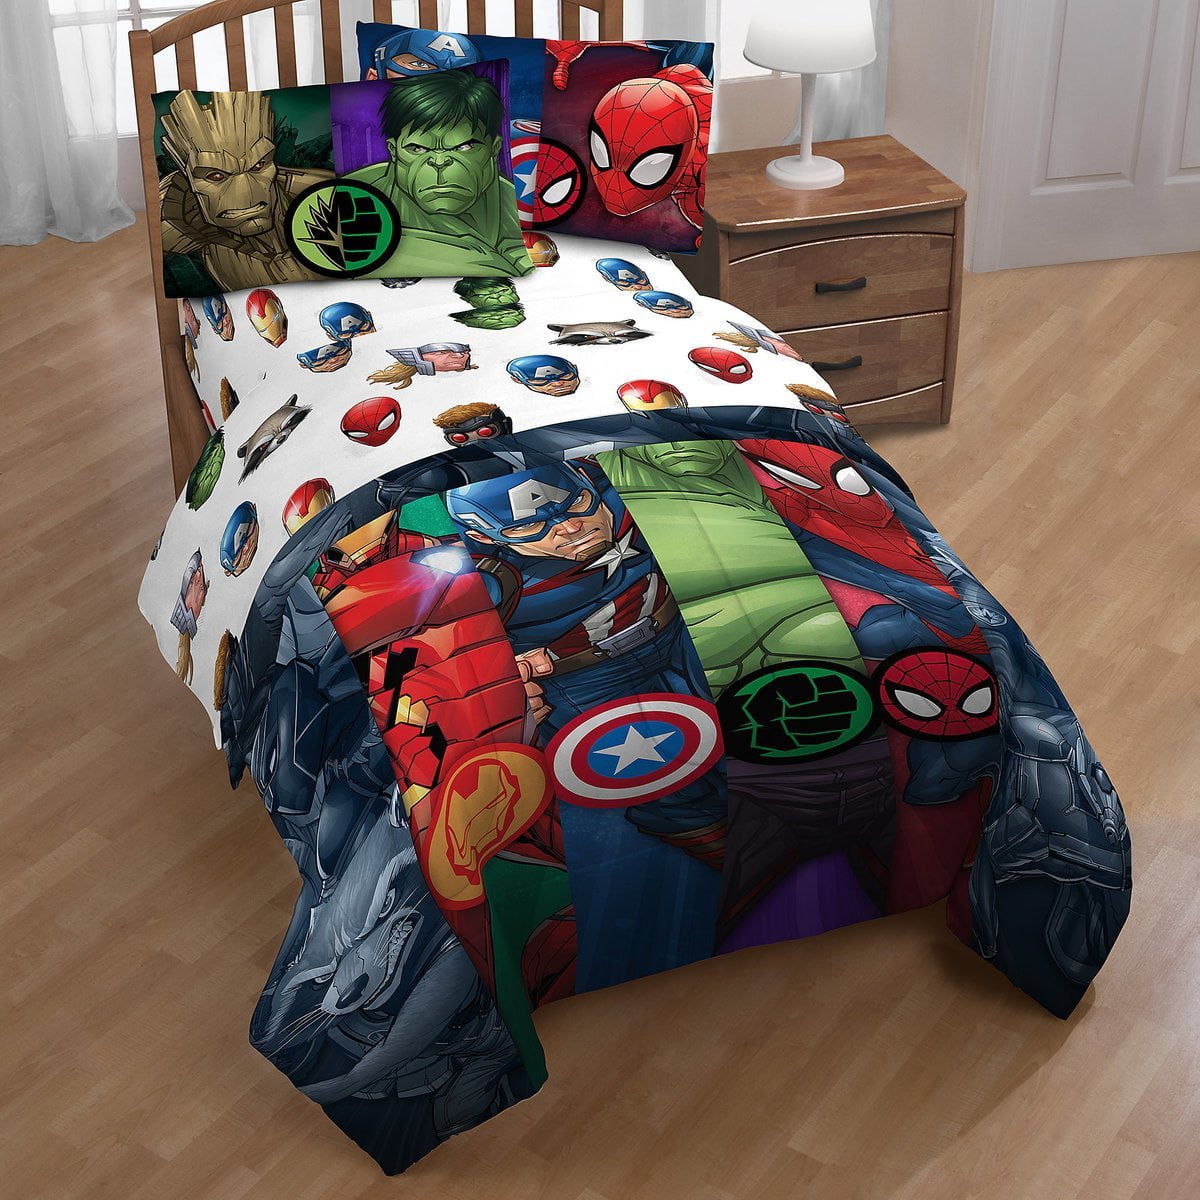 Avengers Infinity War 3 Piece Twin Sheet Set Bedding 